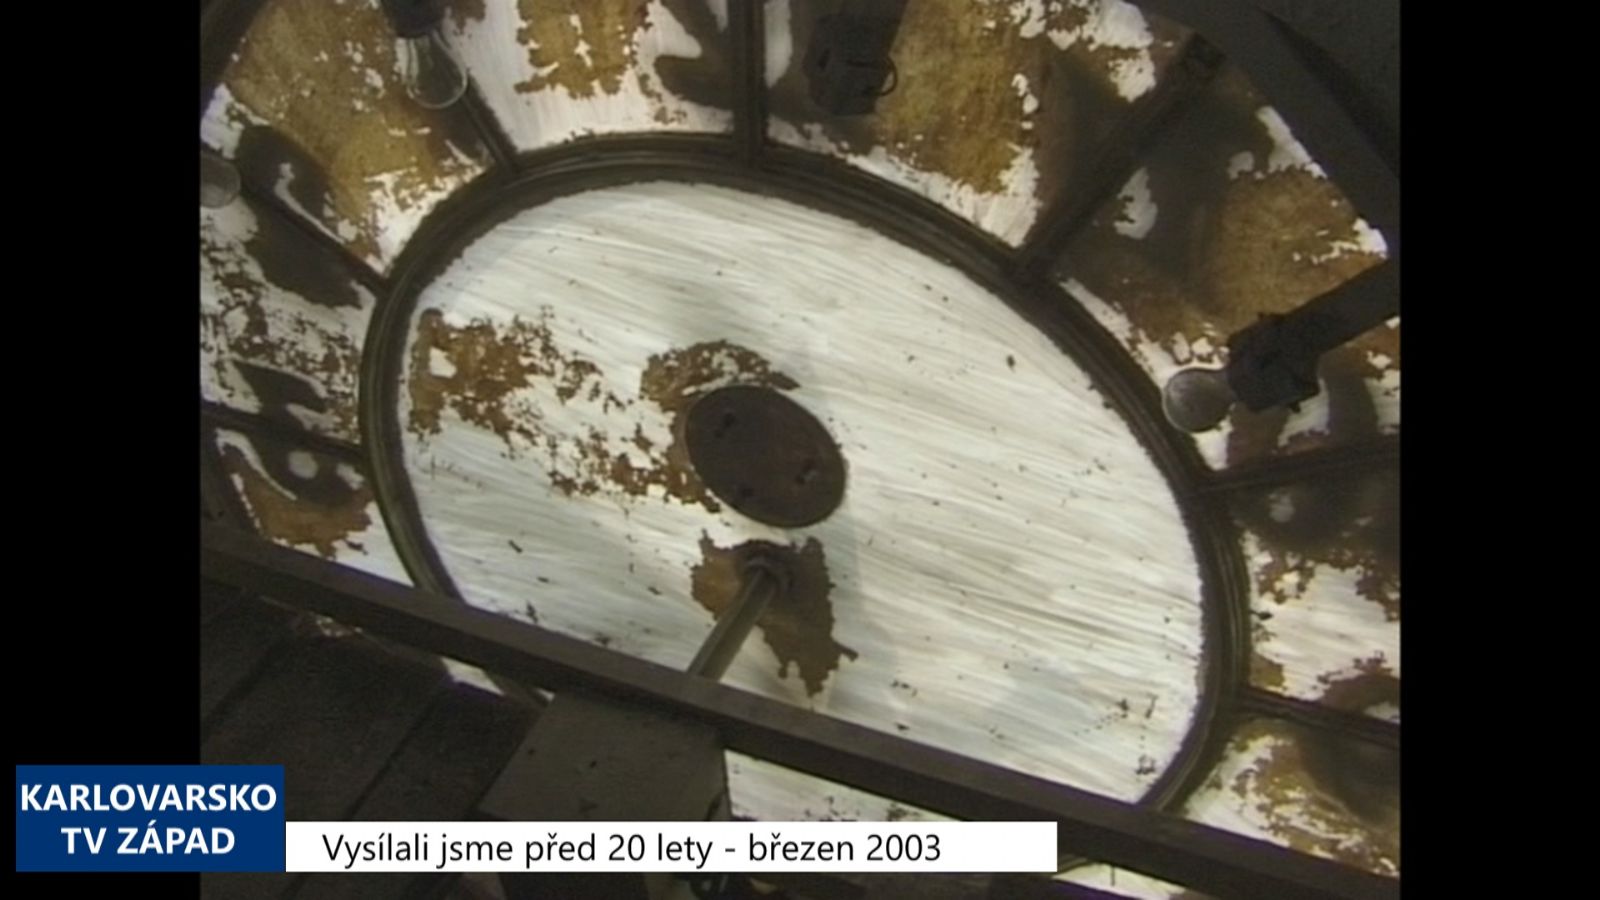 2003 – Cheb: Dojde k opravě věžních hodin (TV Západ)